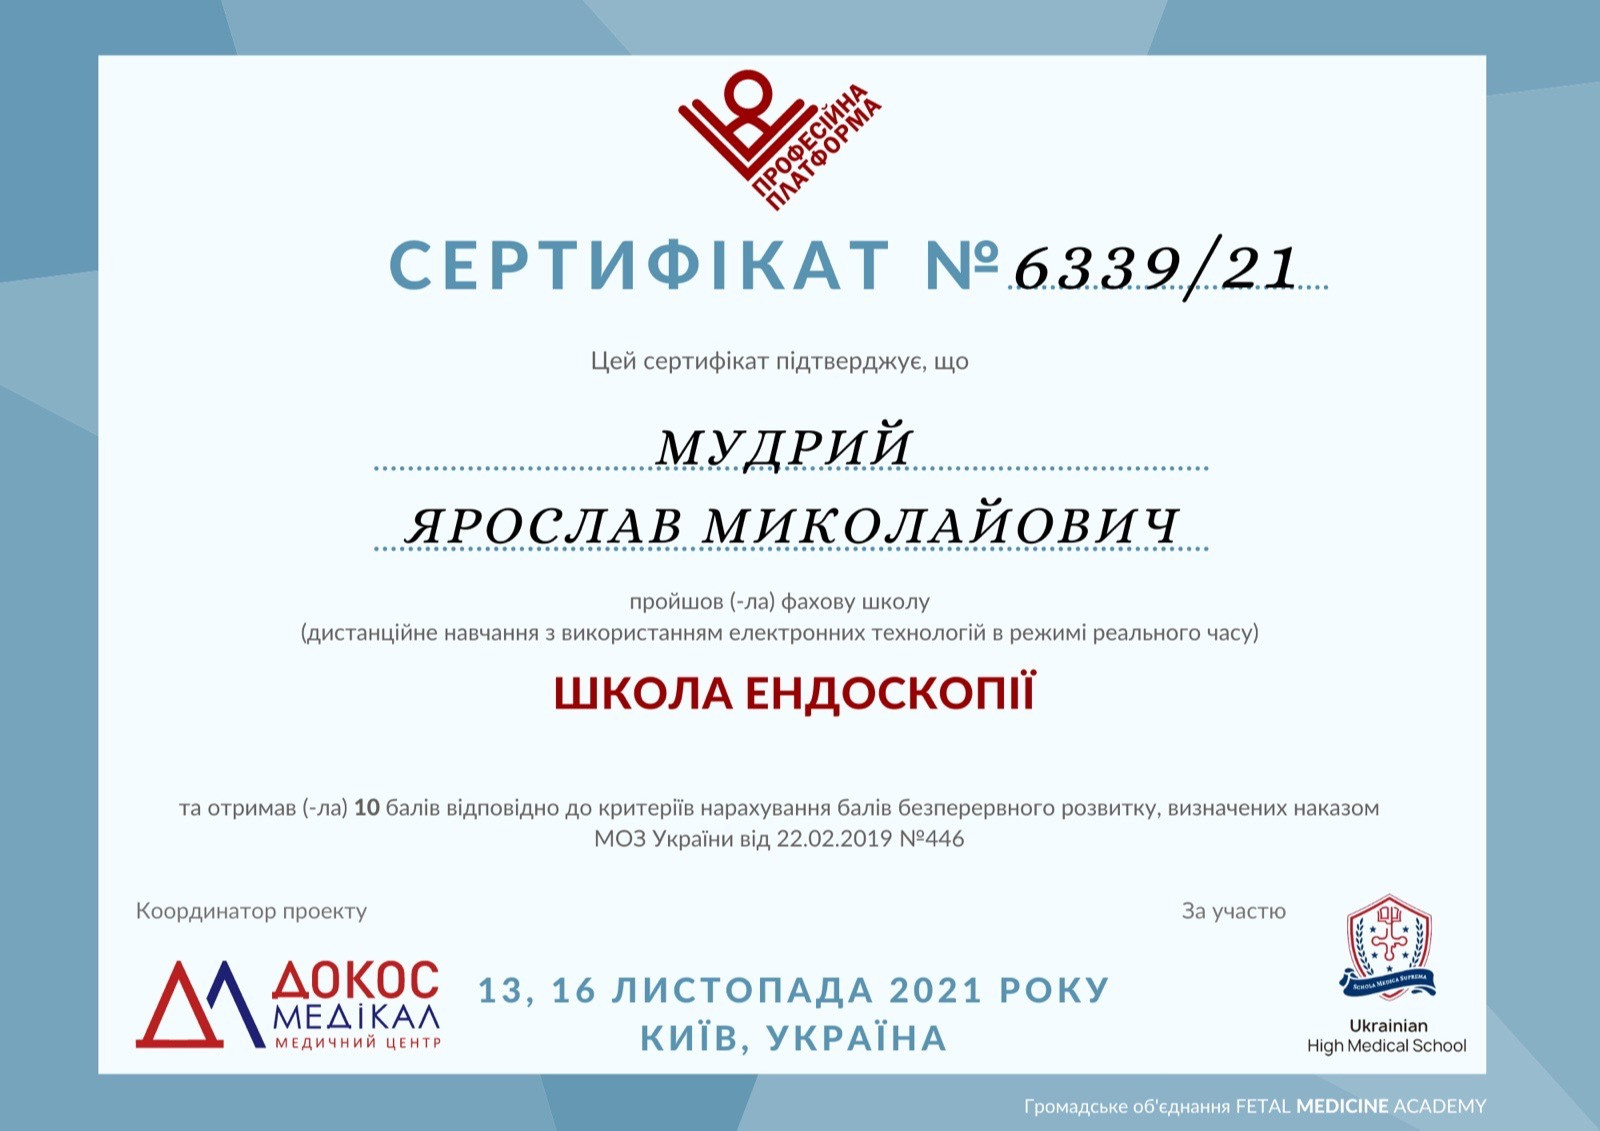 Сертификат об участии в специализированной школе (дистанционное обучение с использованием електронных технологий в режиме реального времени)